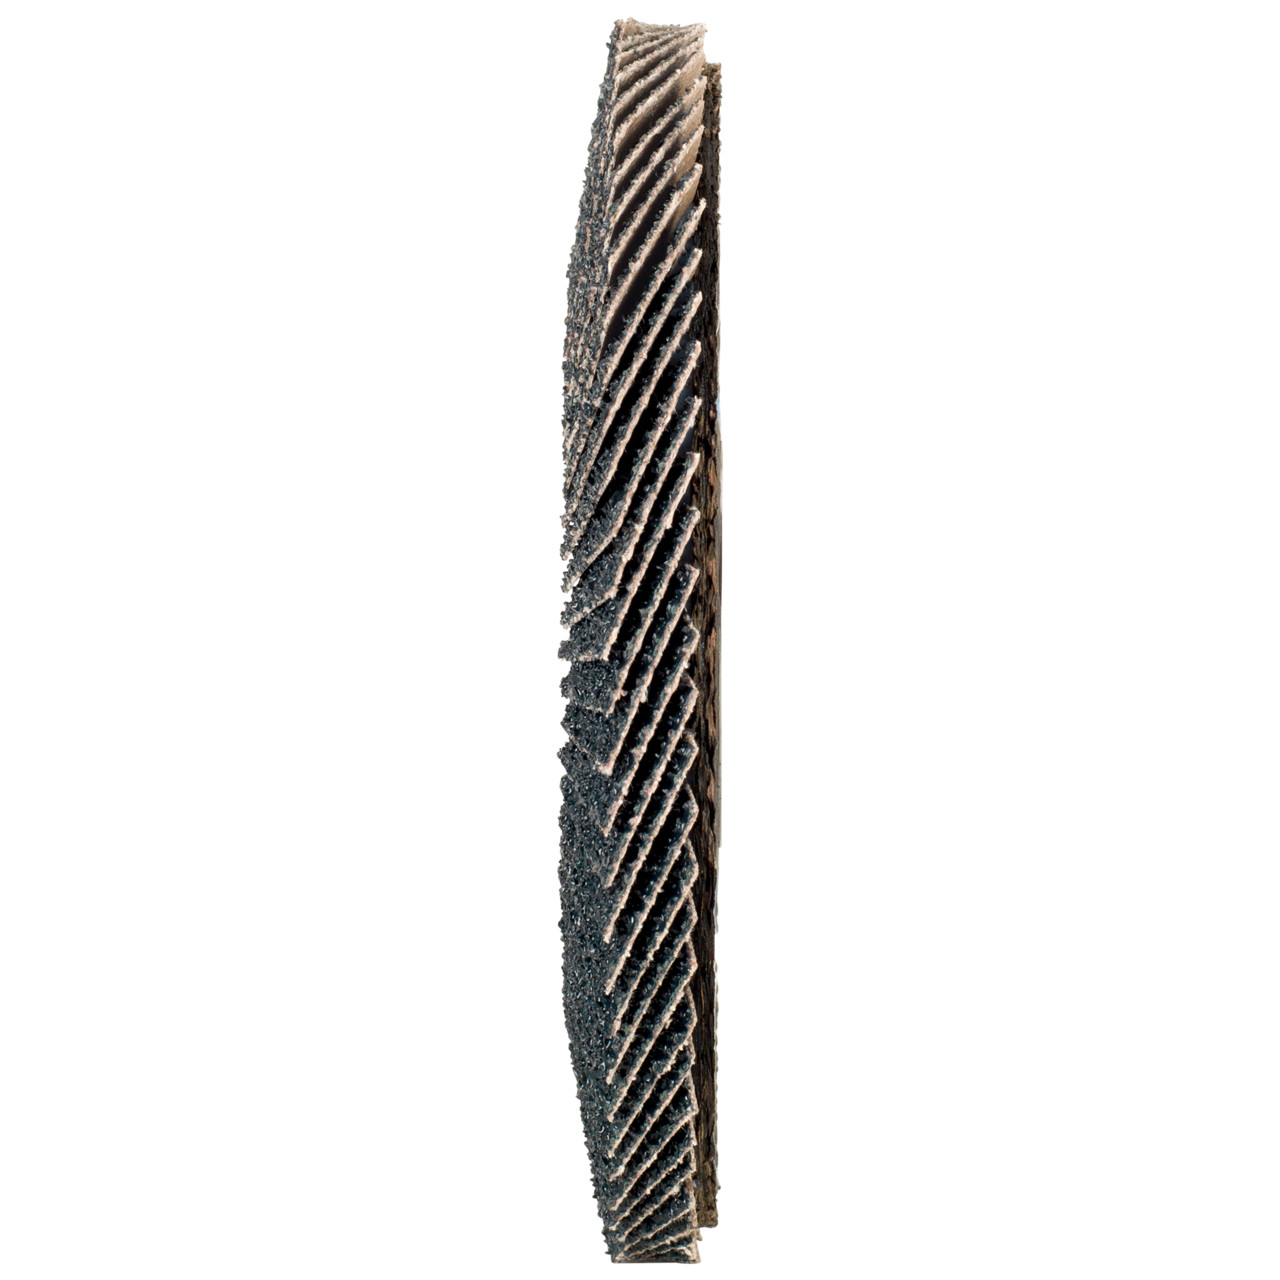 Tyrolit Arandela dentada DxH 115x22,2 2en1 para acero y acero inoxidable, P120, forma: 28A - versión recta (versión con cuerpo de soporte de fibra de vidrio), Art. 846344